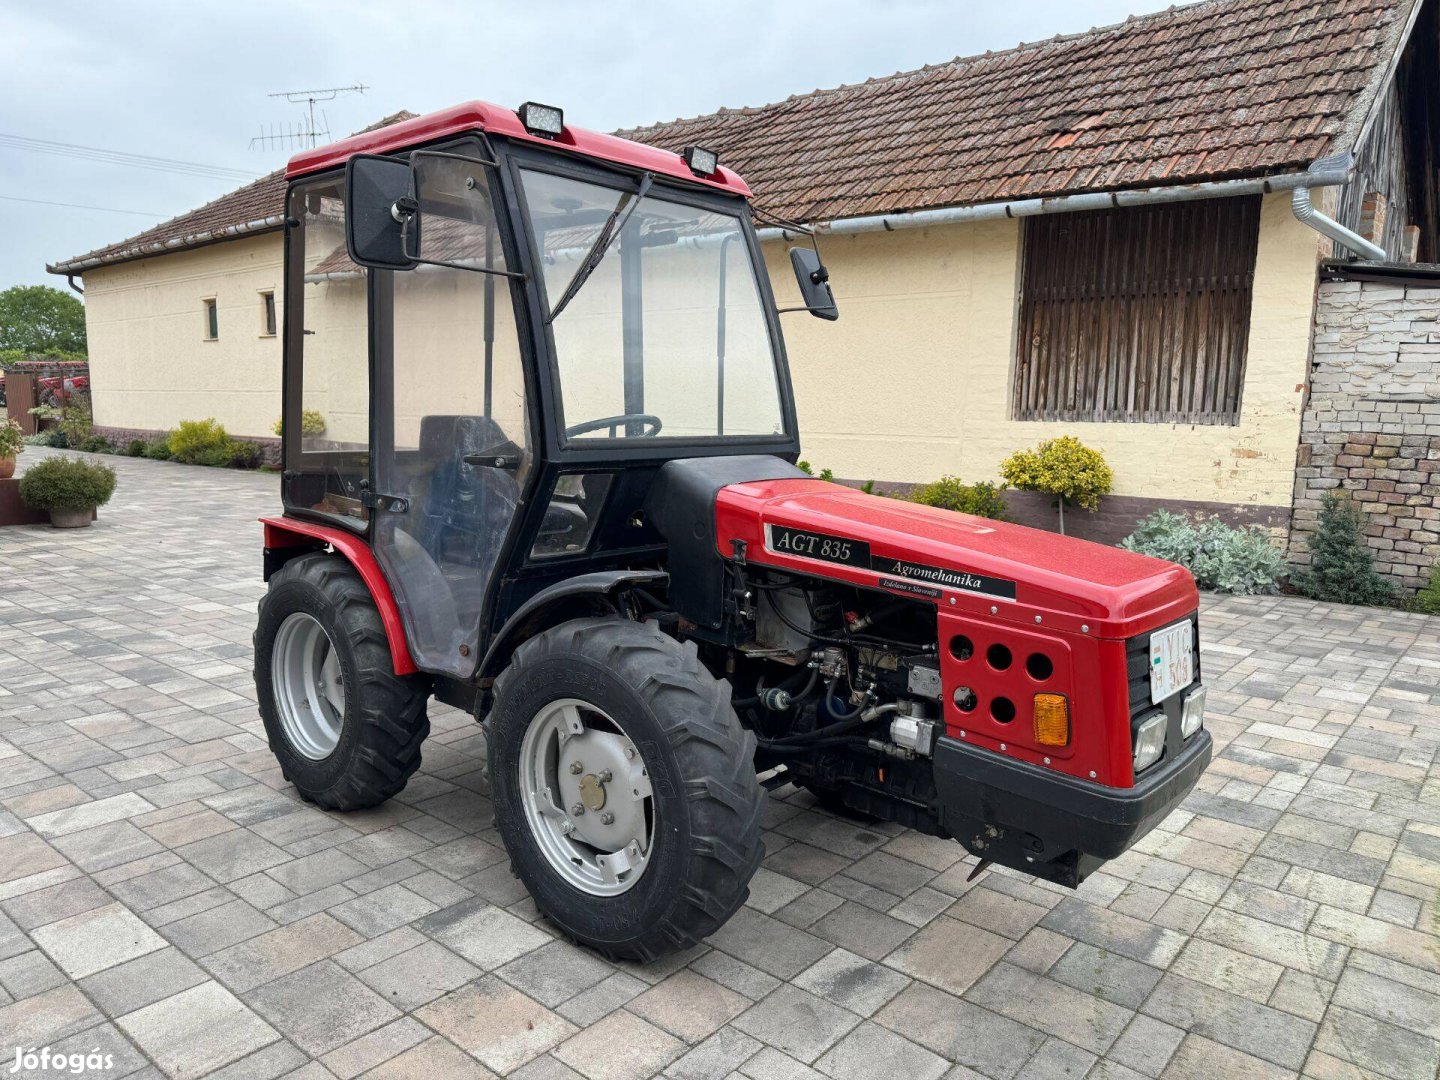 Agromehanika Agt 835 kertészeti traktor